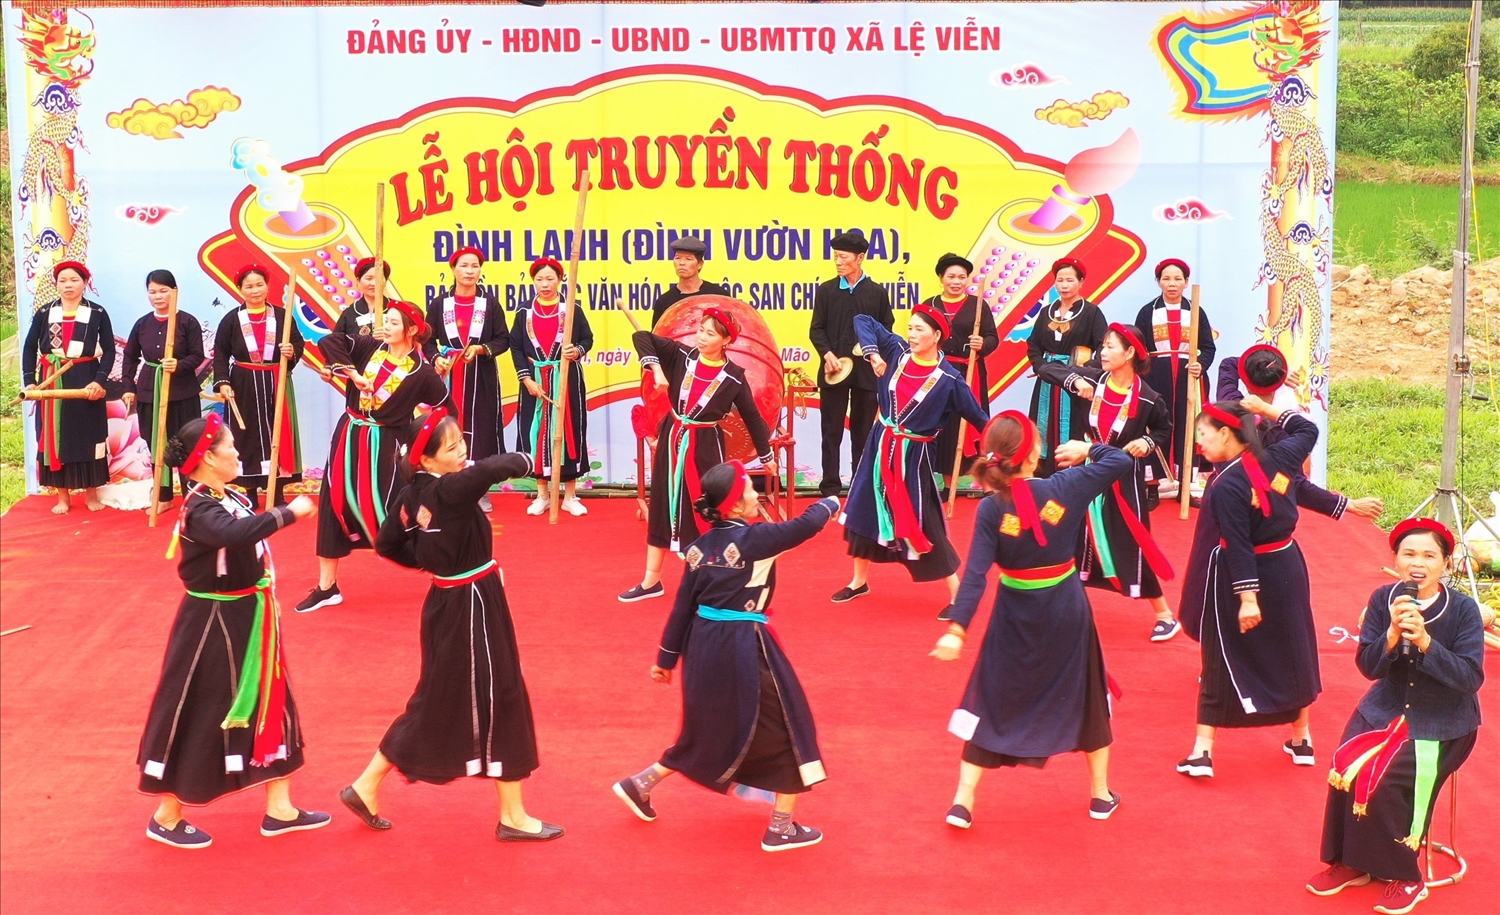 Điệu múa Tắc Xình của dân tộc Sán Chí biểu diễn tại Lễ hội